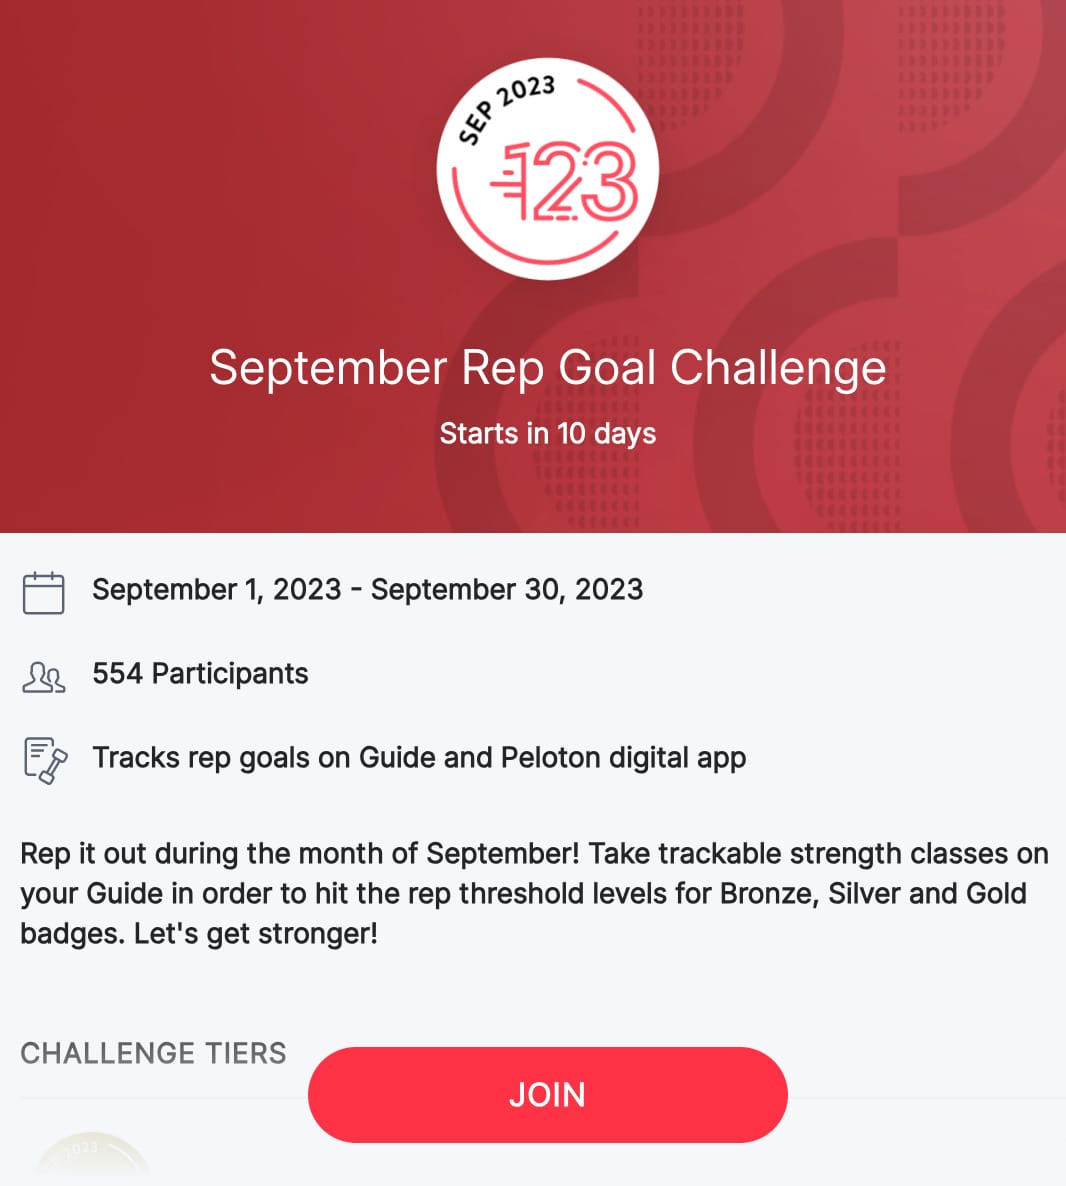 September Rep Goal Challenge